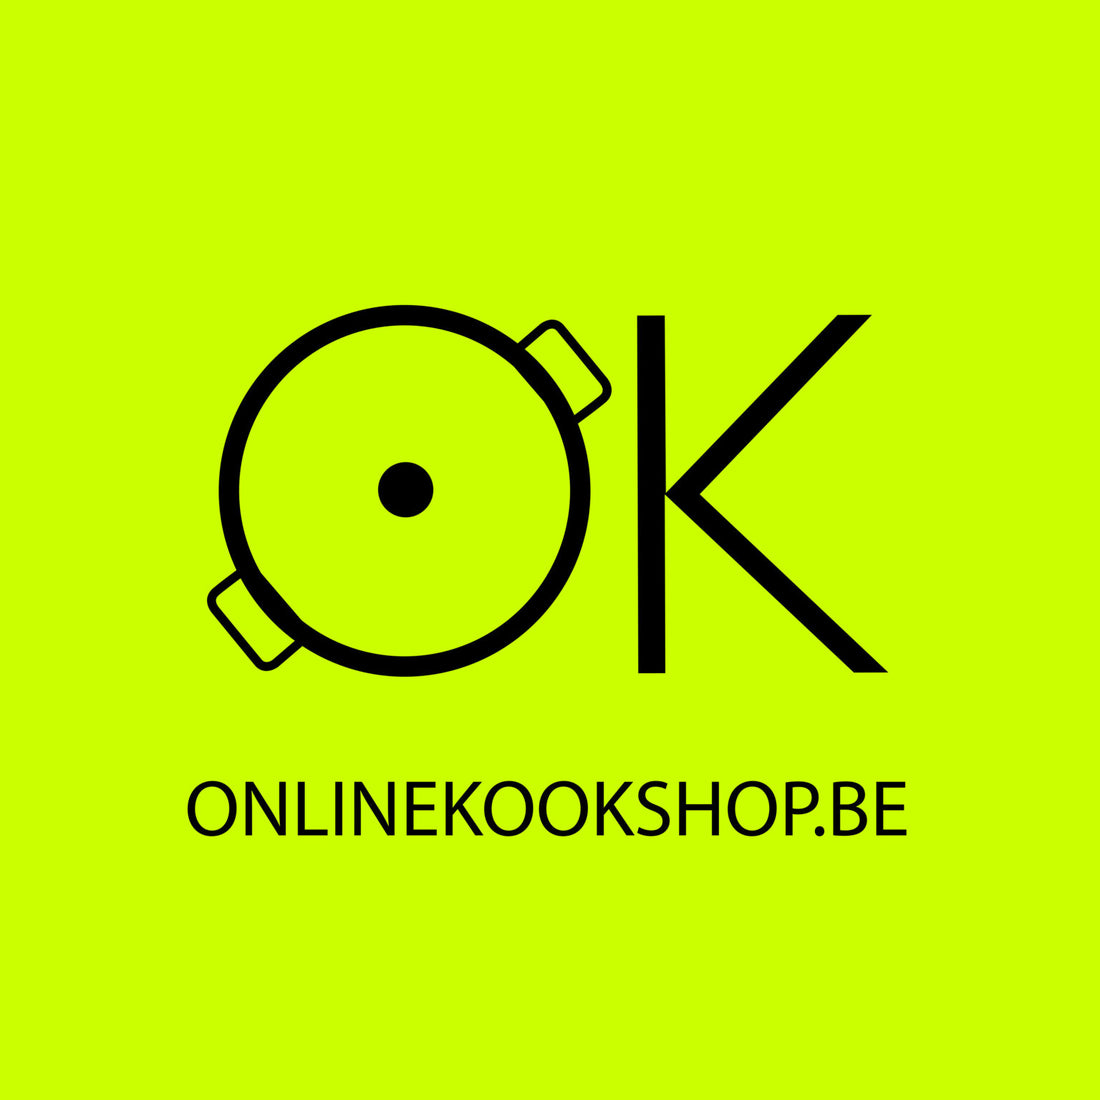 Onlinekookshop.be